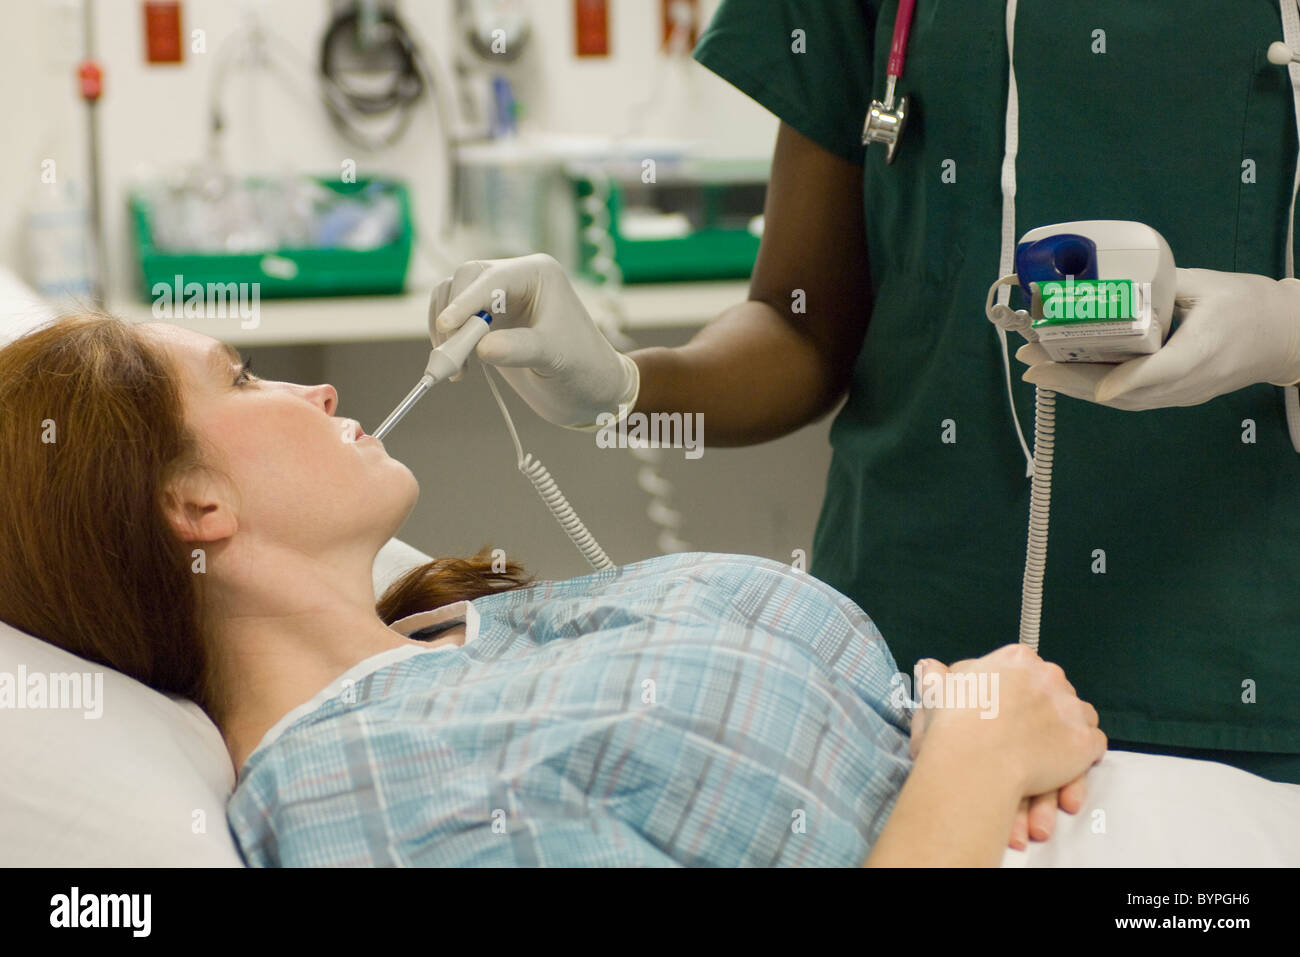 Nursing taking patient's temperature Stock Photo